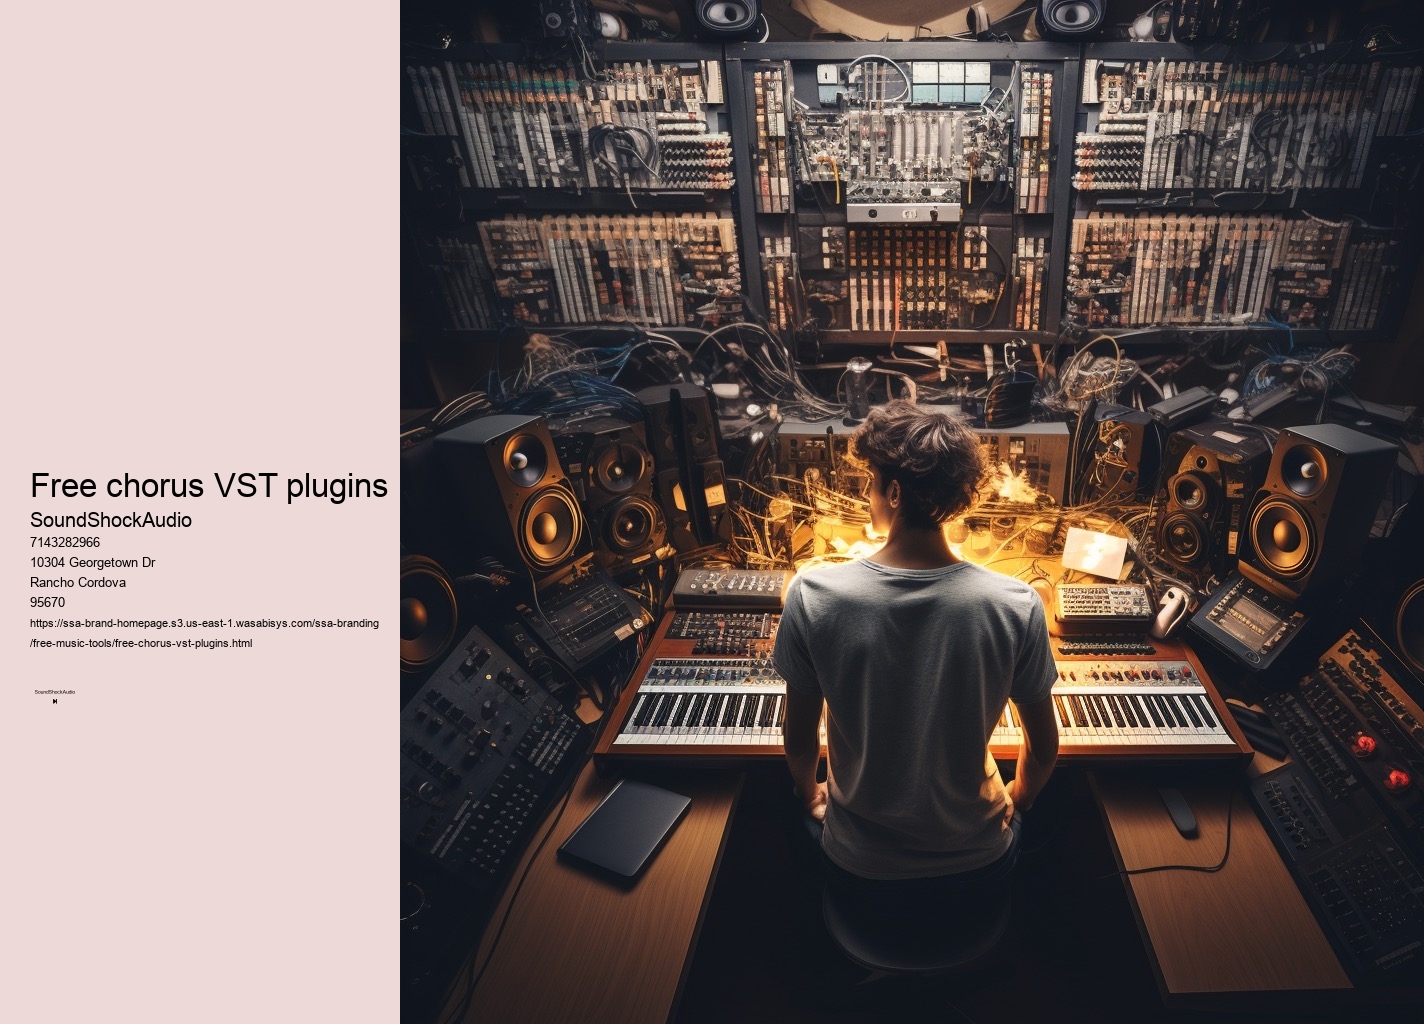 VST Plugins free